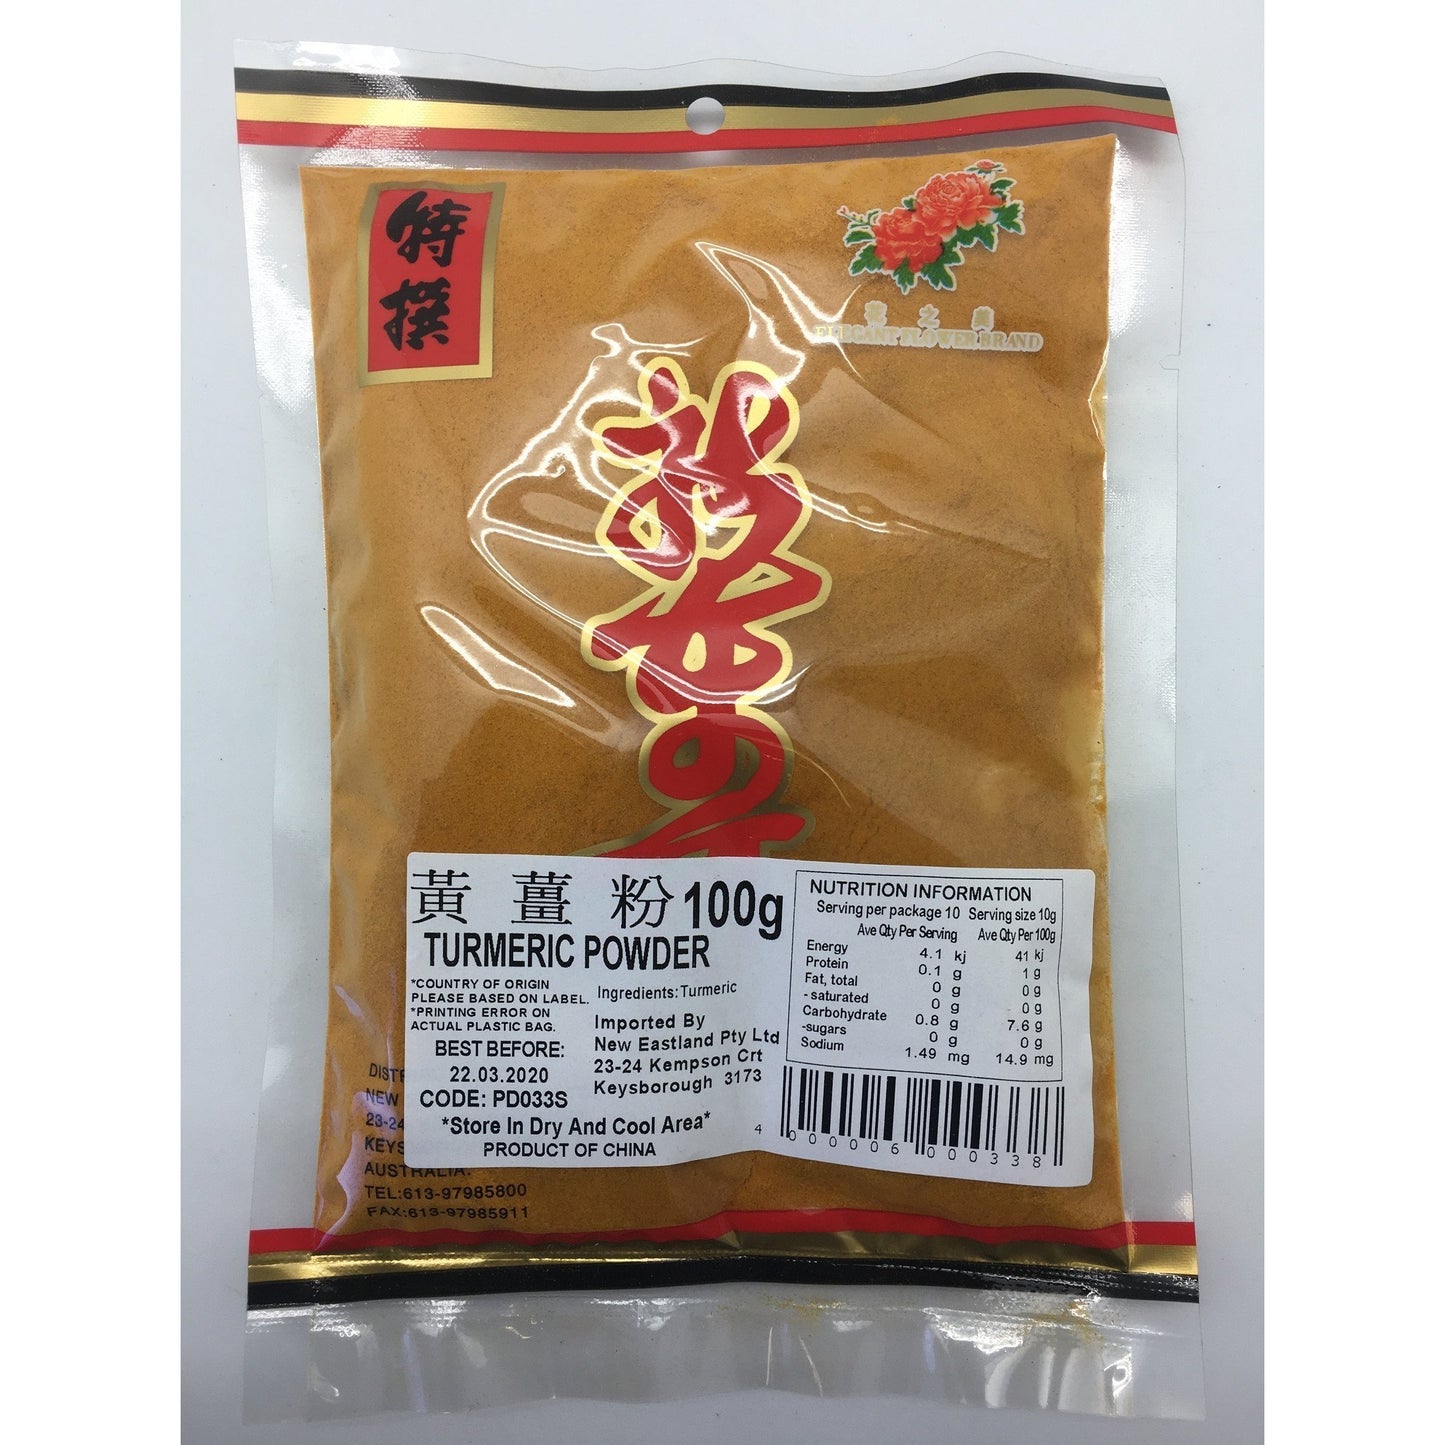 PD033S New Eastland Pty Ltd - Turmeric Powder 100g - 10 packets / 1 bag - New Eastland Pty Ltd - Asian food wholesalers